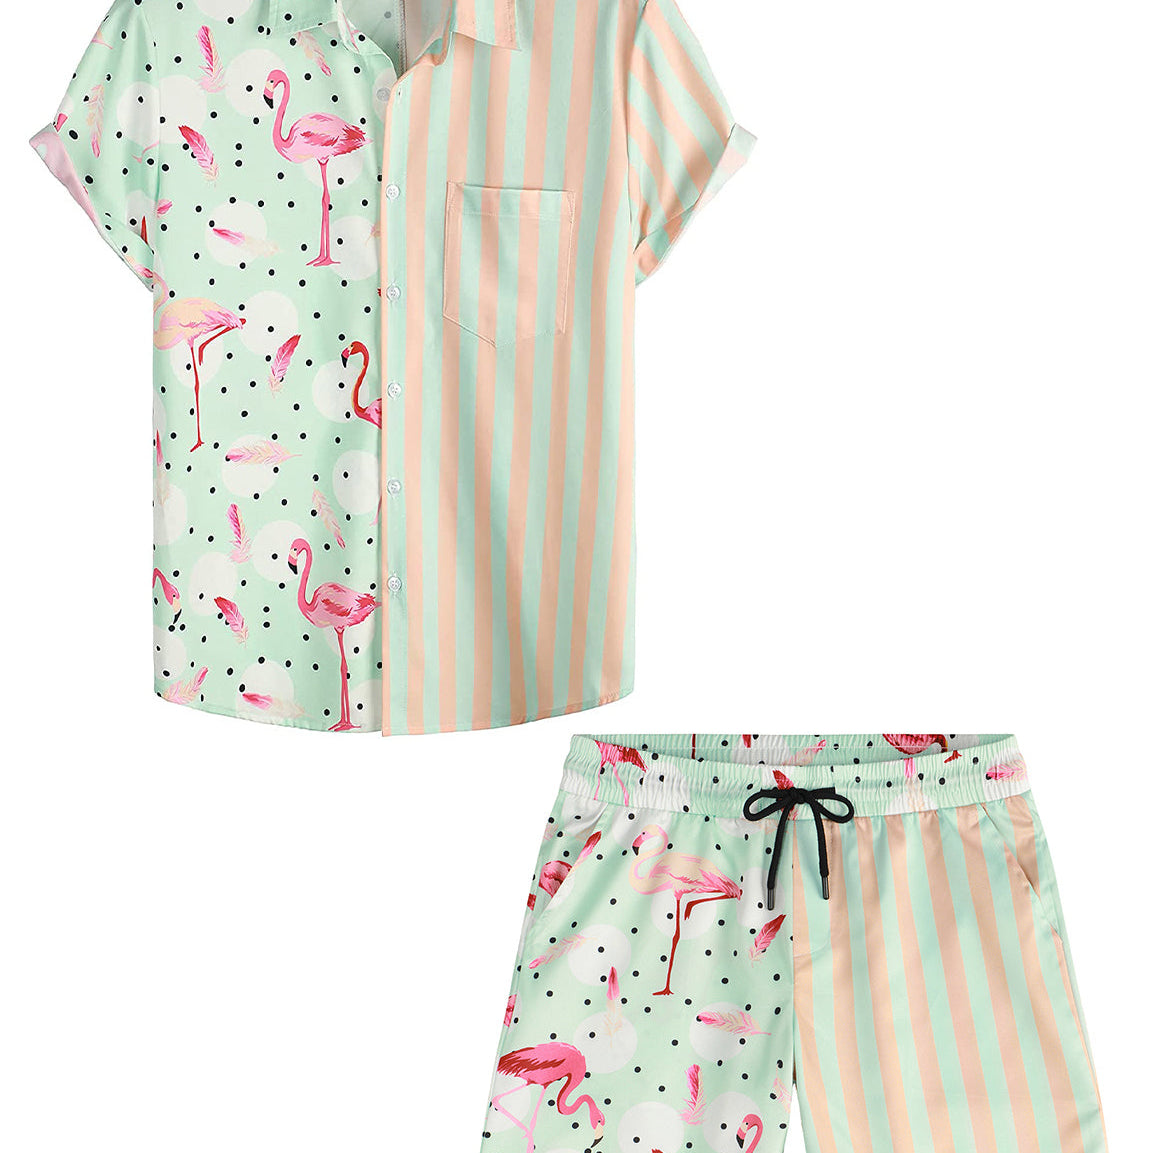 Men's Flamingo Green Striped Pocket Hawaiian Matching Shirt and Shorts Set